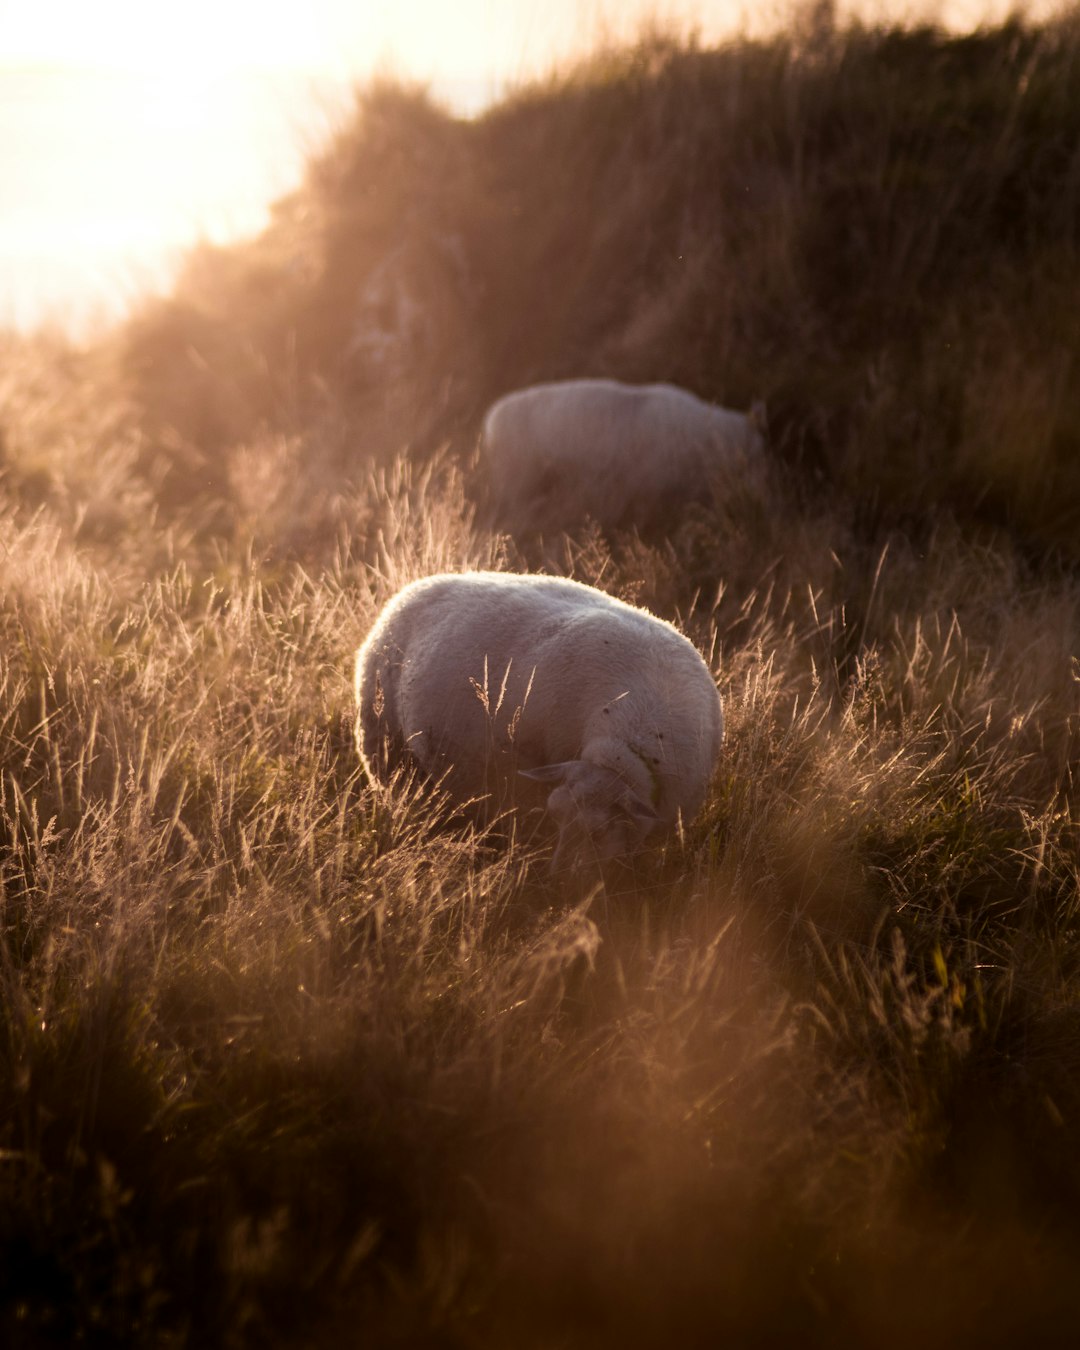 white sheep eating grass during daytime